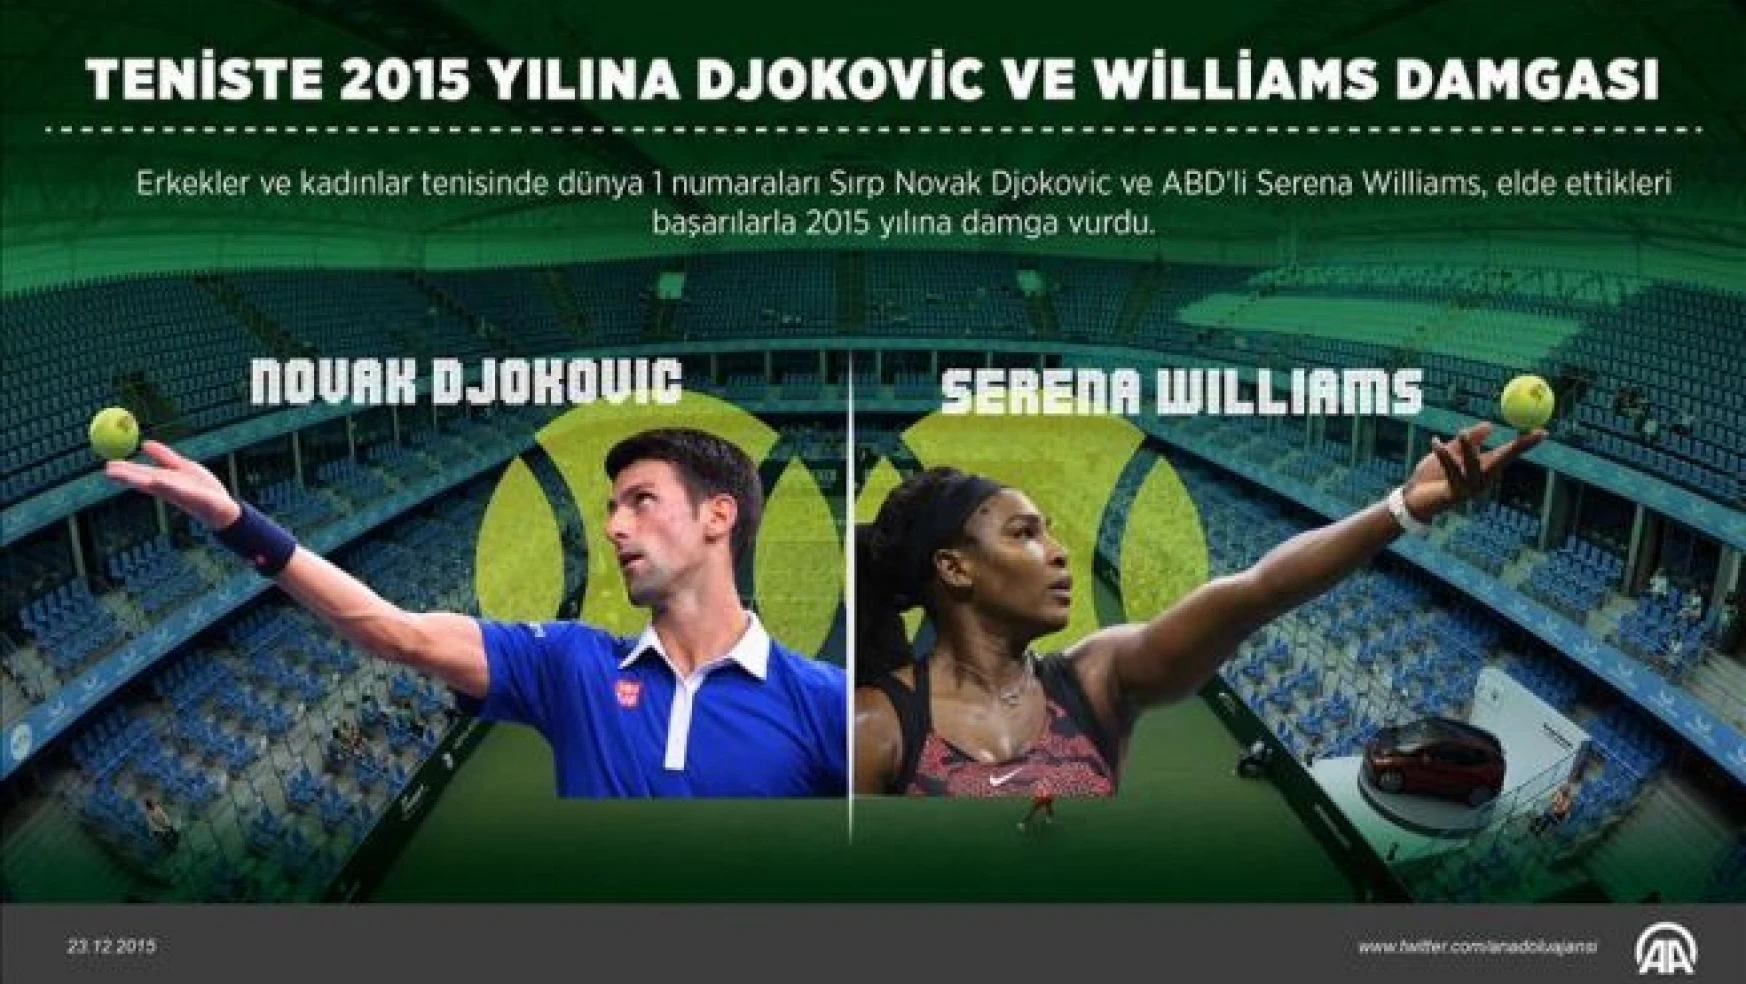 Teniste 2015 yılına Djokovic ve Williams damgası